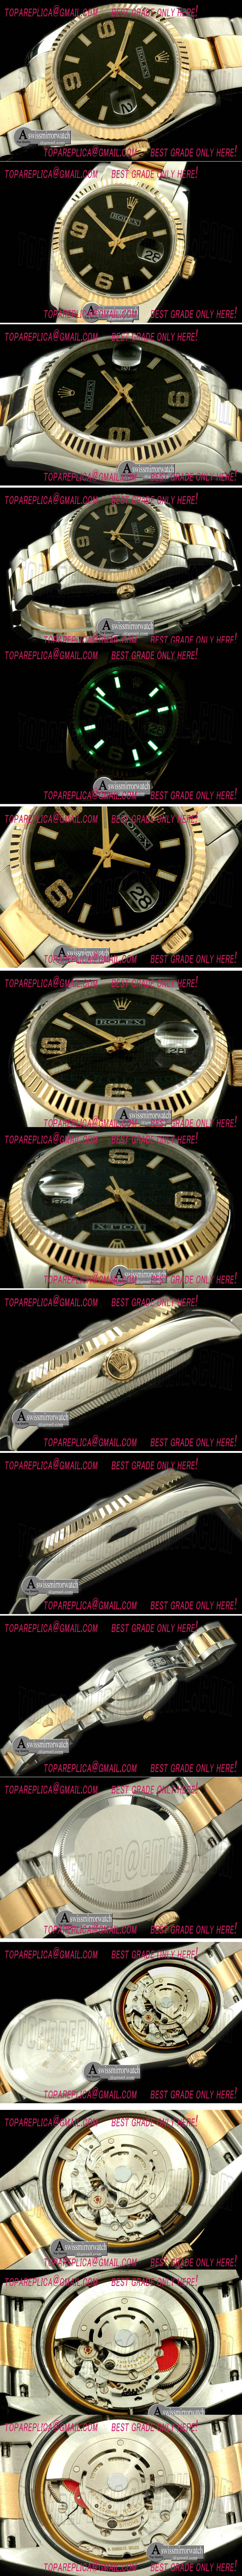 Replica Rolex Watches